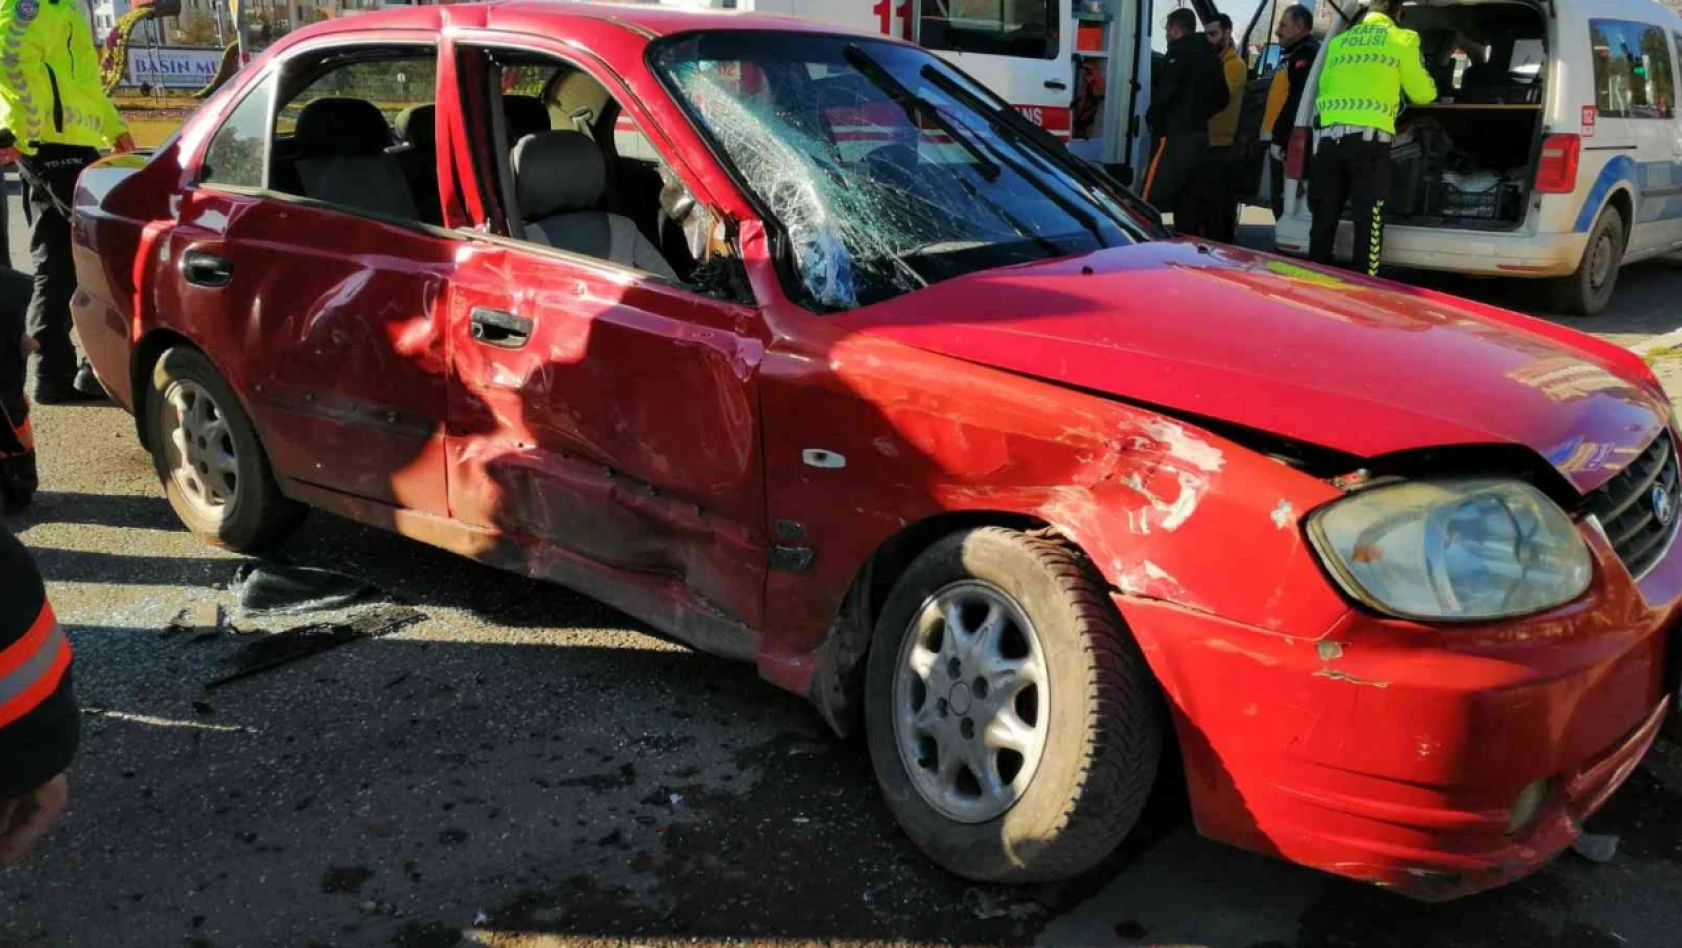 Elazığ'da otobüs ile otomobil çarpıştı: 4 yaralı